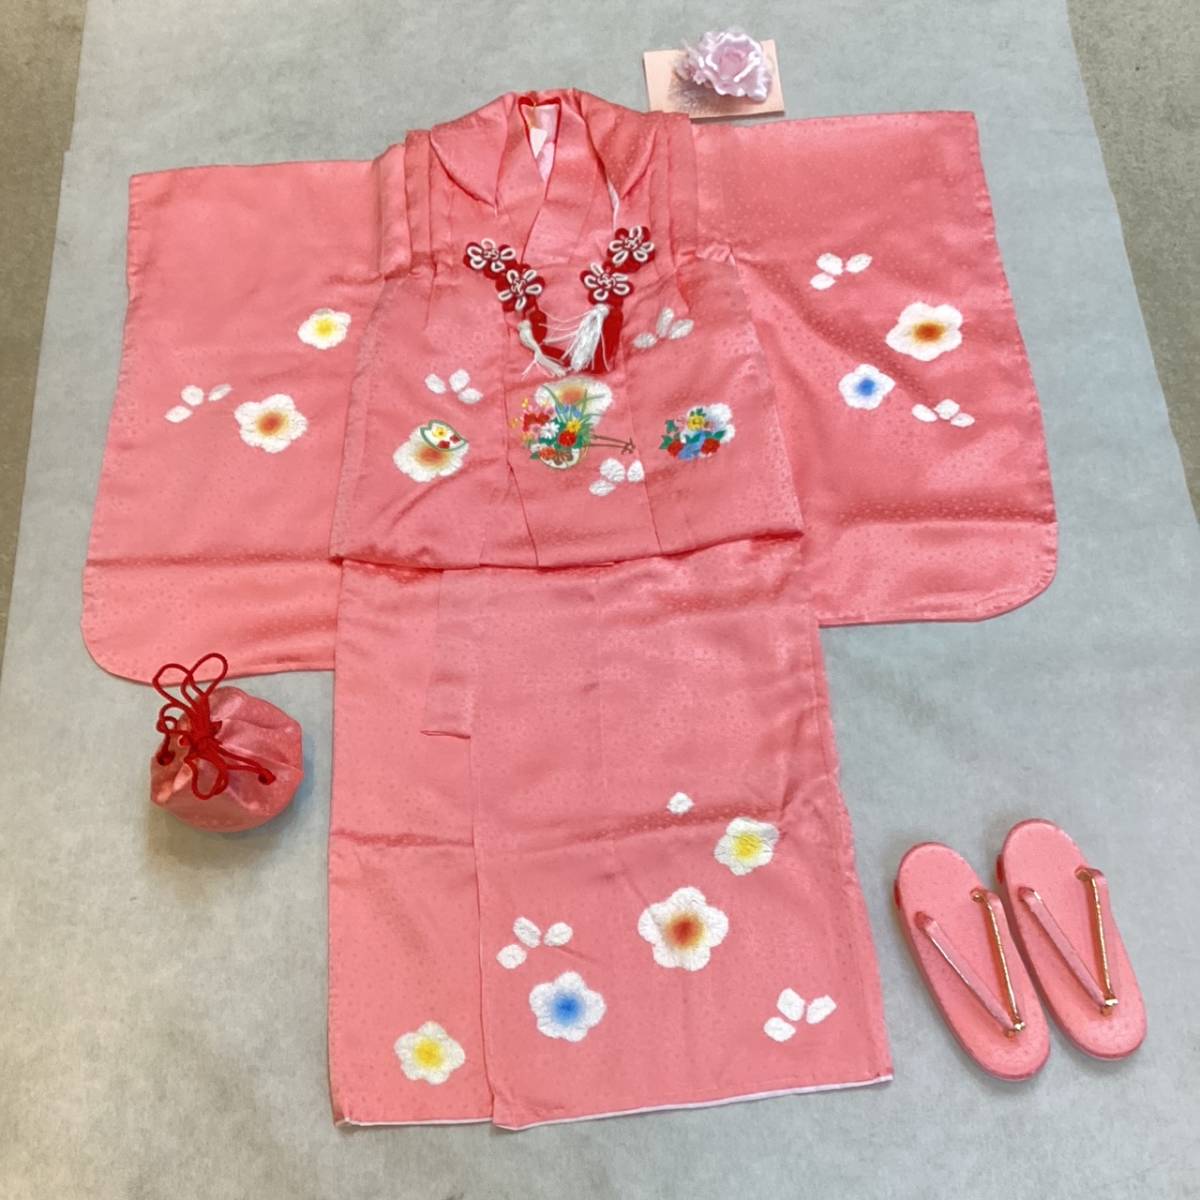  "Семь, пять, три" кимоно 3 лет mi503 натуральный шелк . ткань * кимоно 6 позиций комплект розовый цвет сделано в Японии новый товар включая доставку 